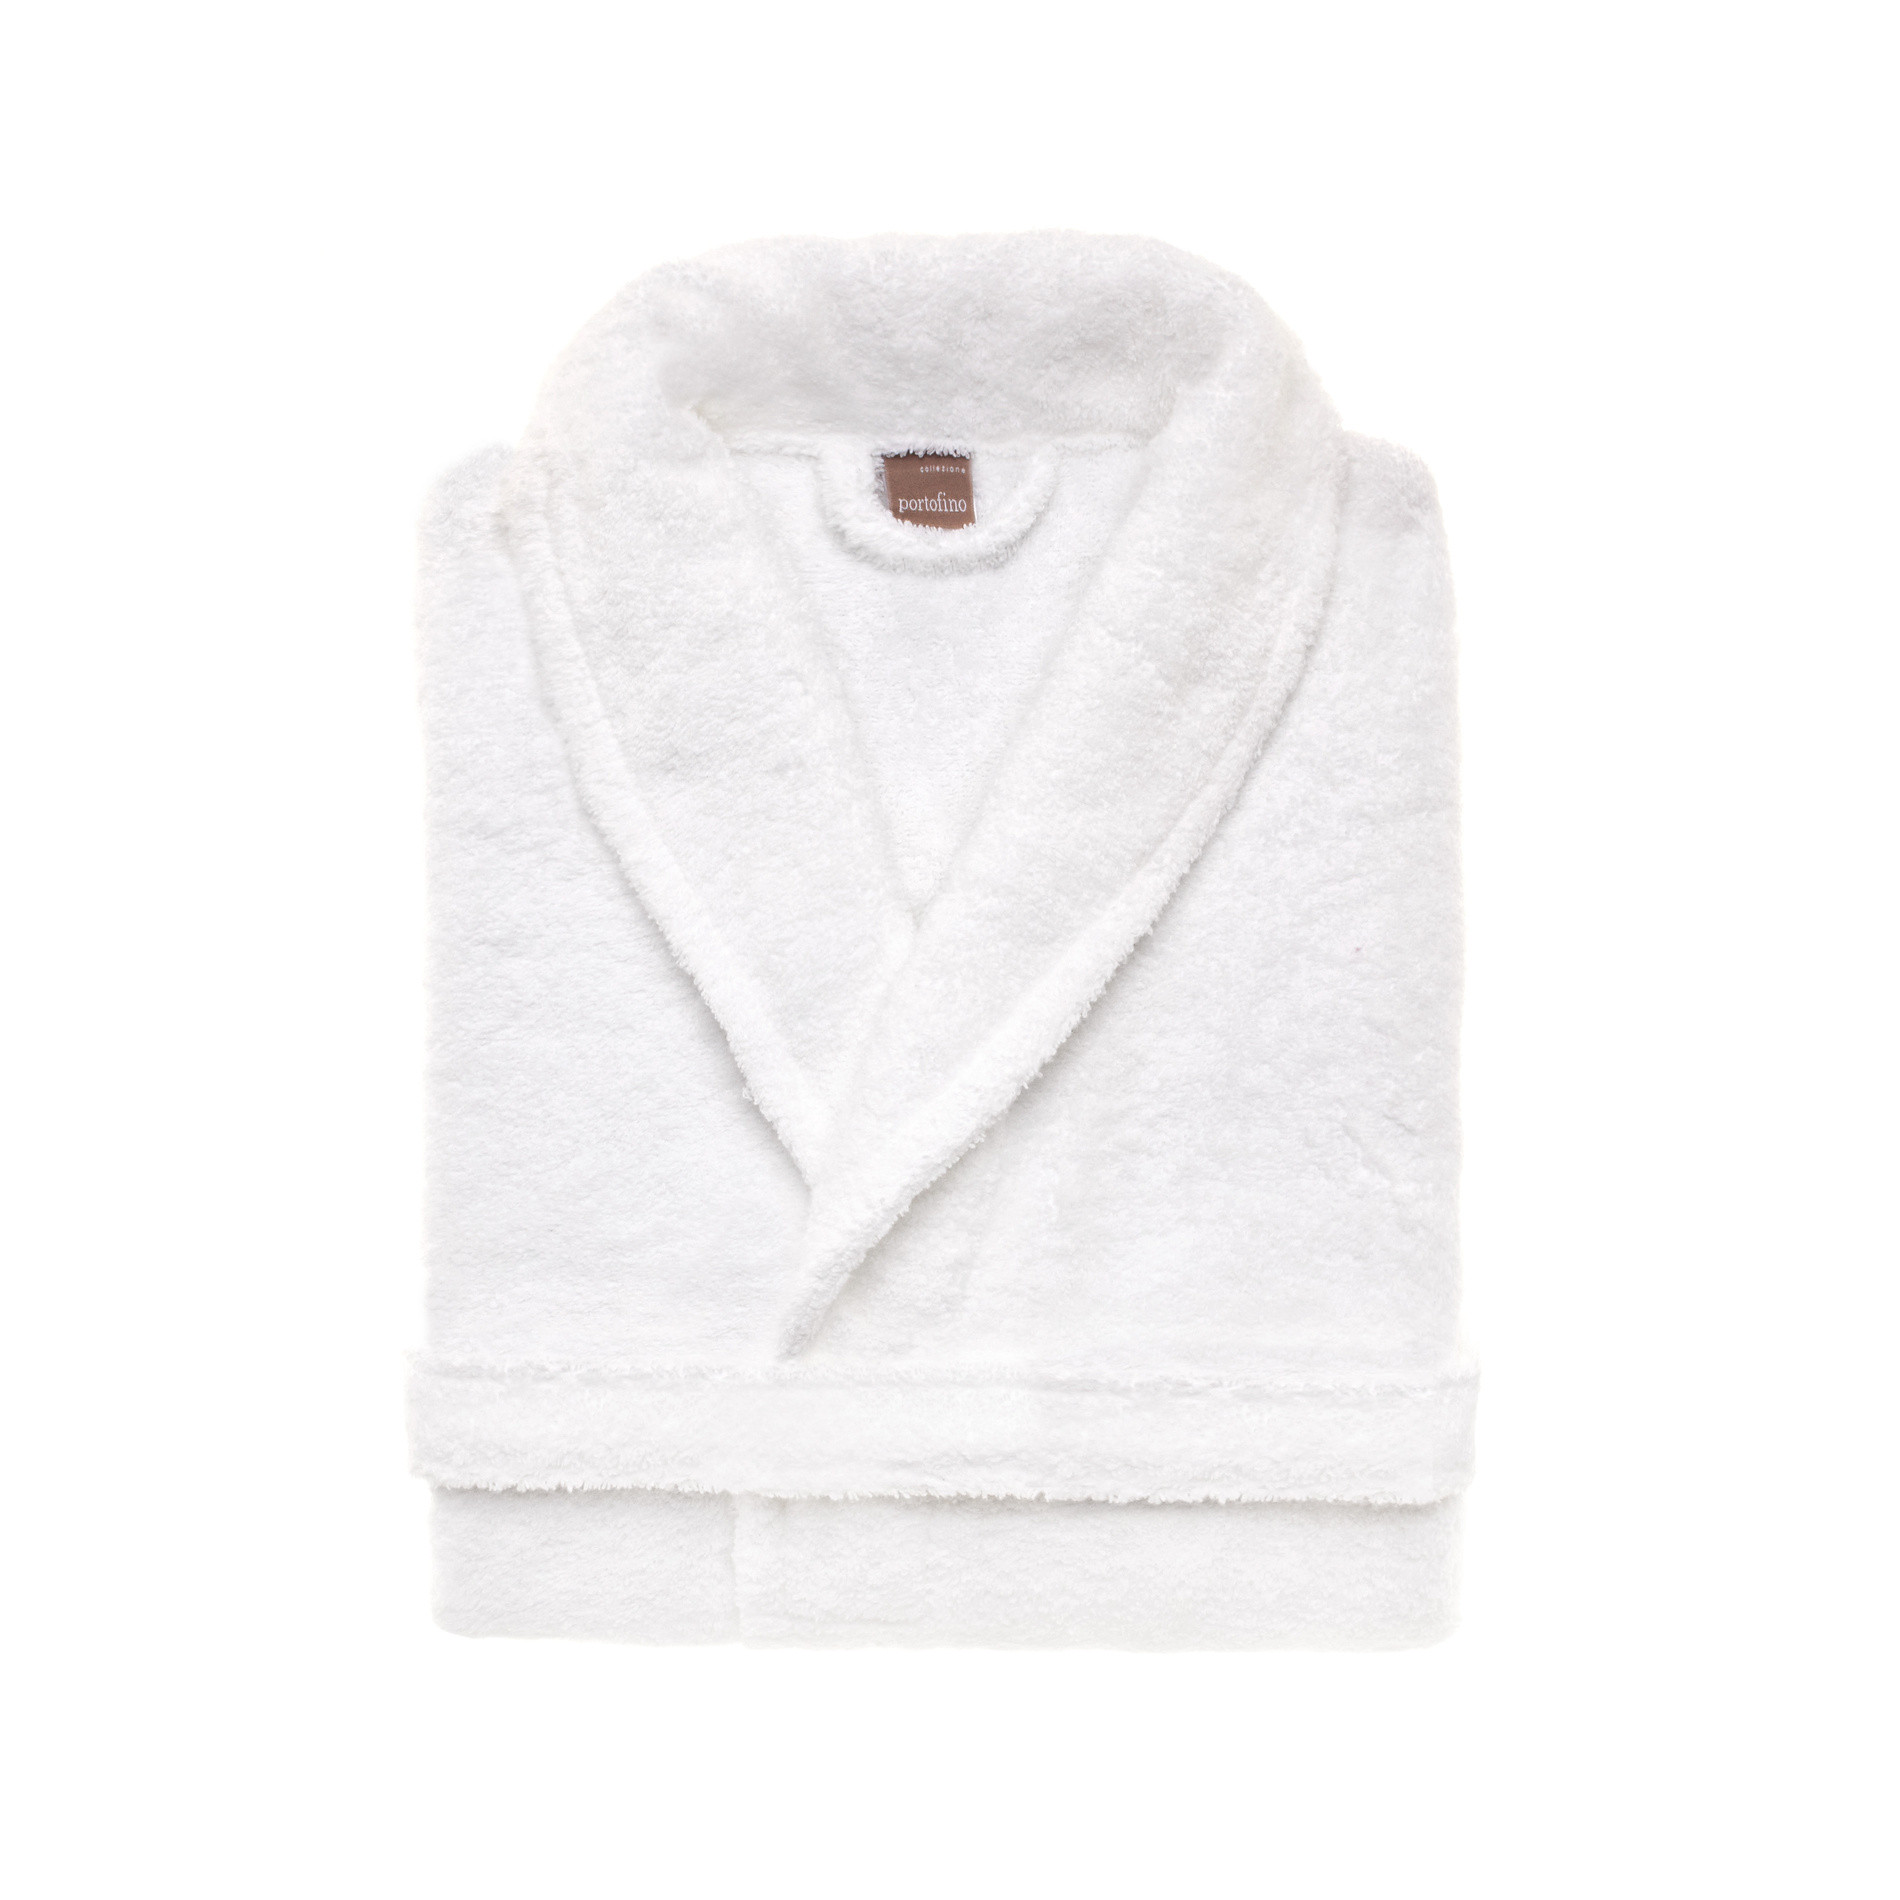 Portofino 100% cotton terry bathrobe, White, large image number 0